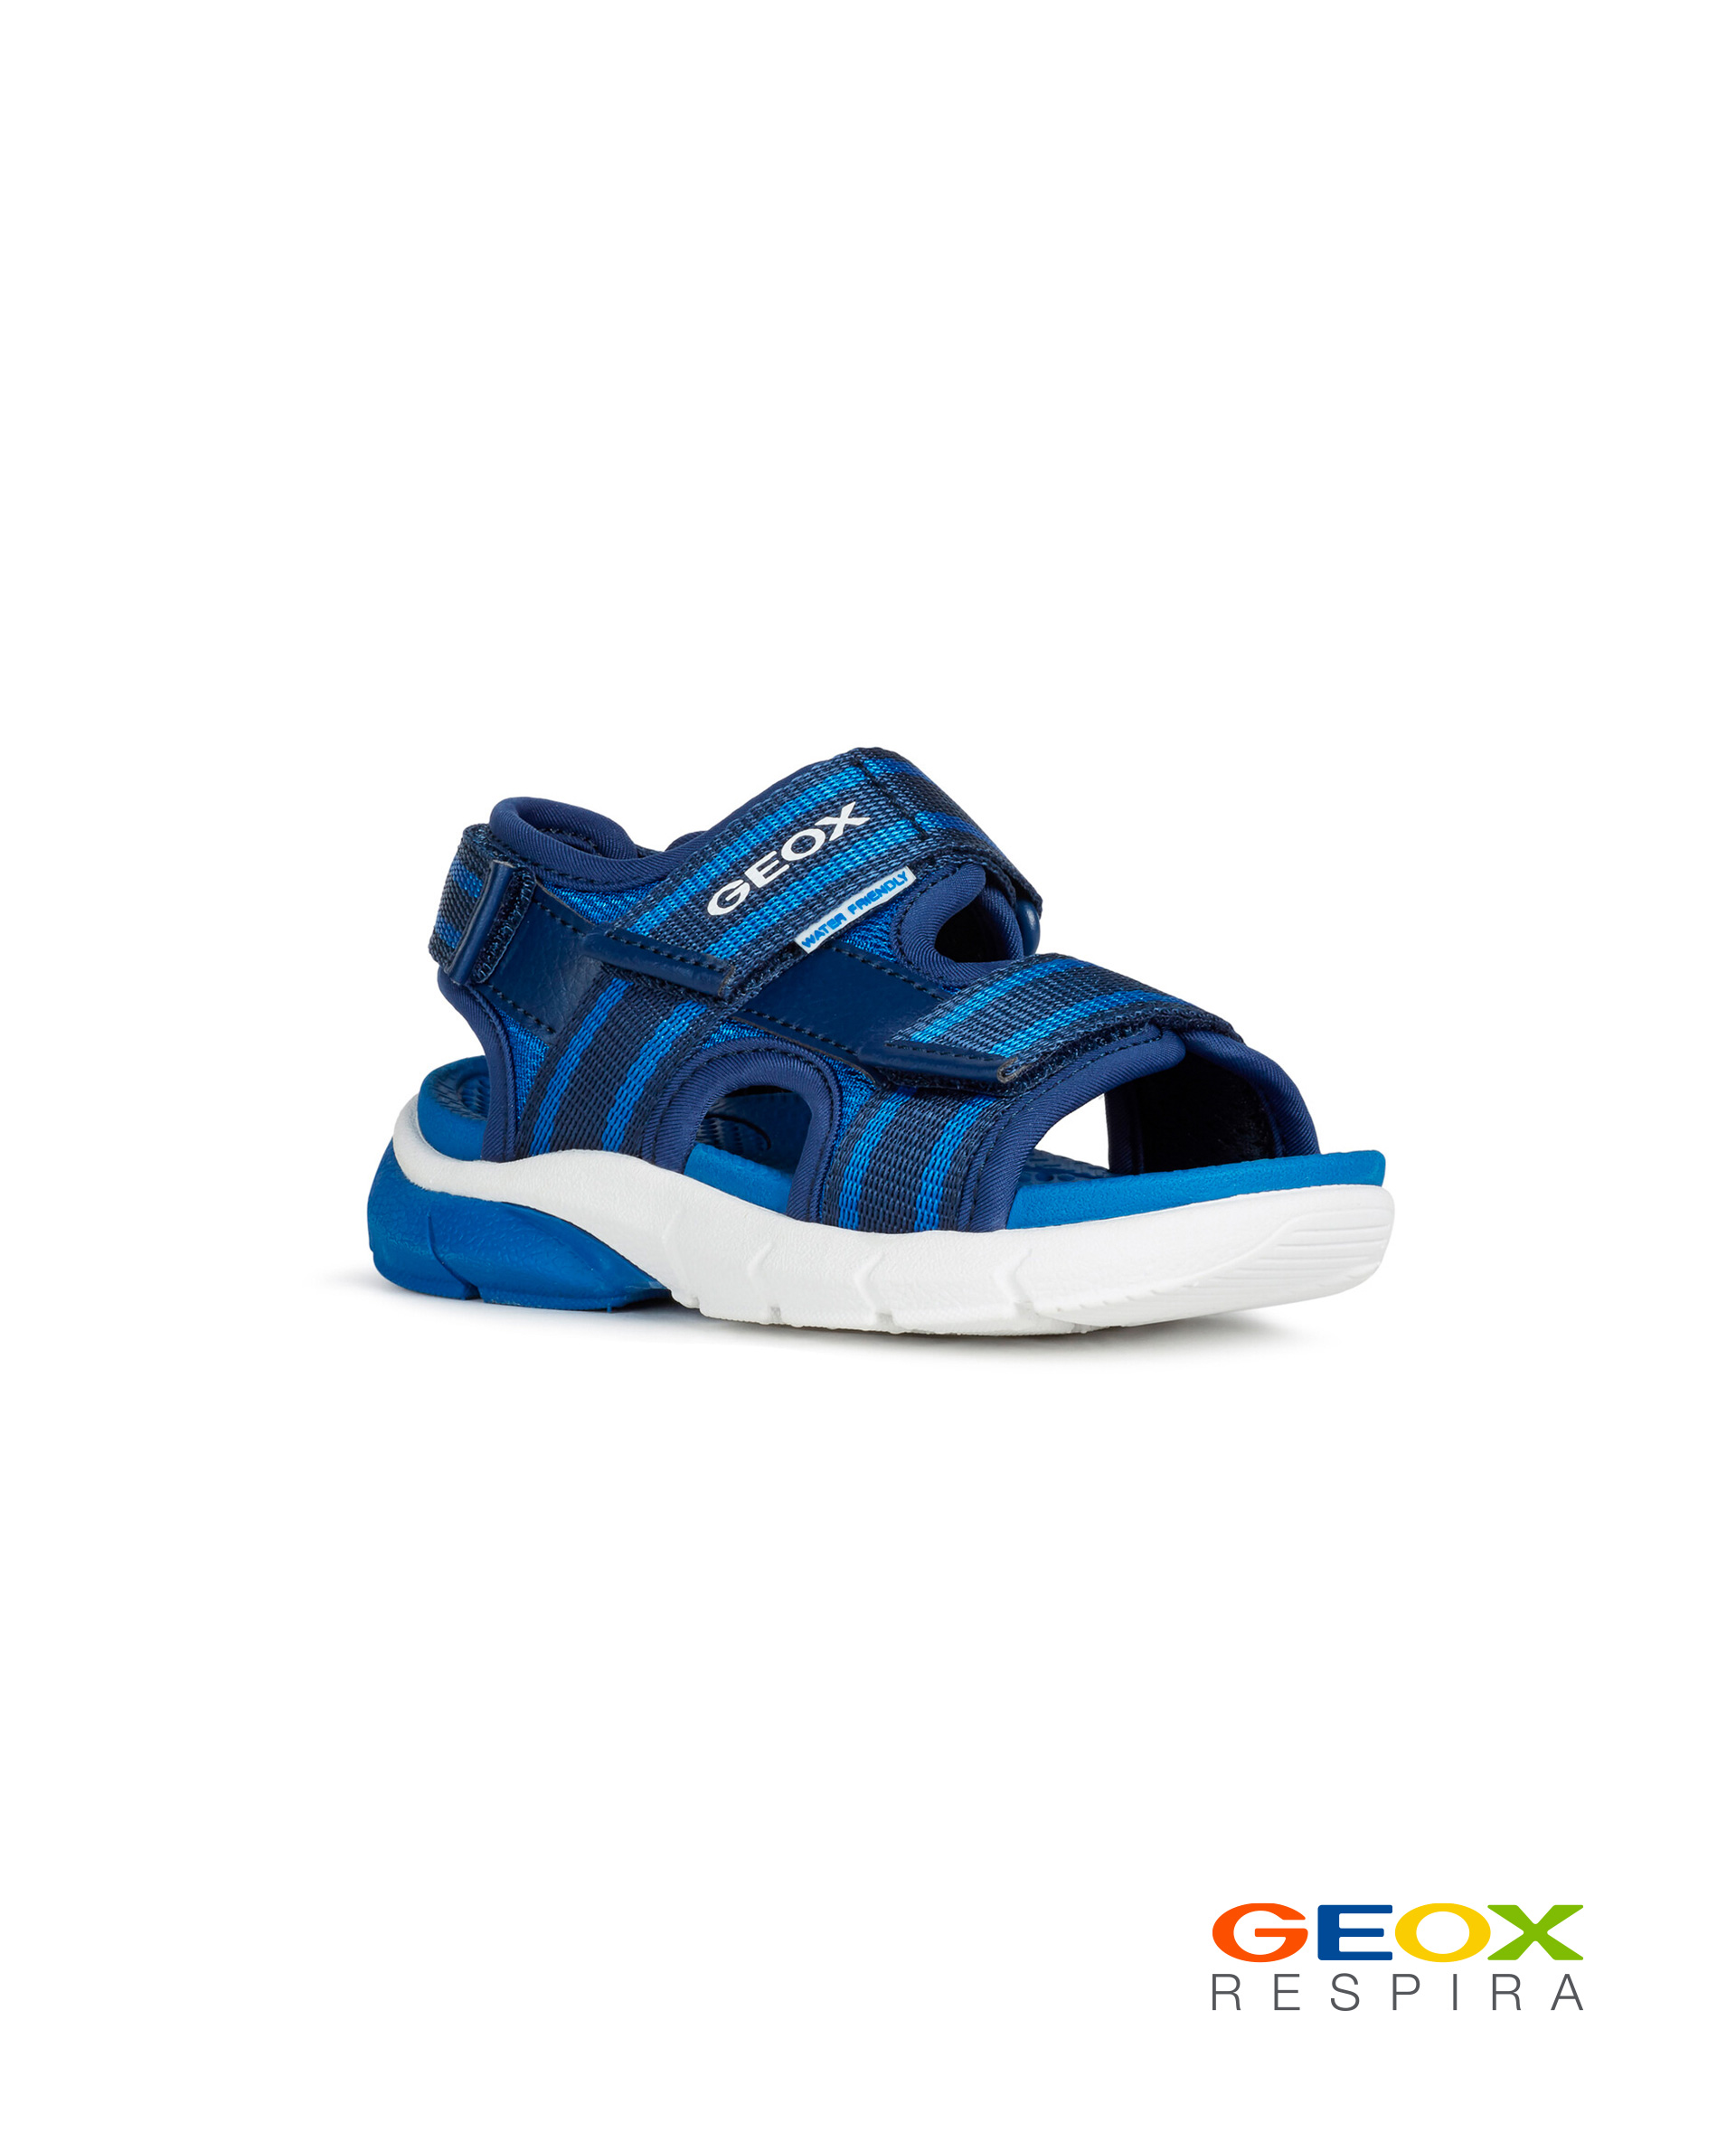 Синие сандалии Geox для мальчика J929DB01114C0615, размер 28, цвет синий - фото 1